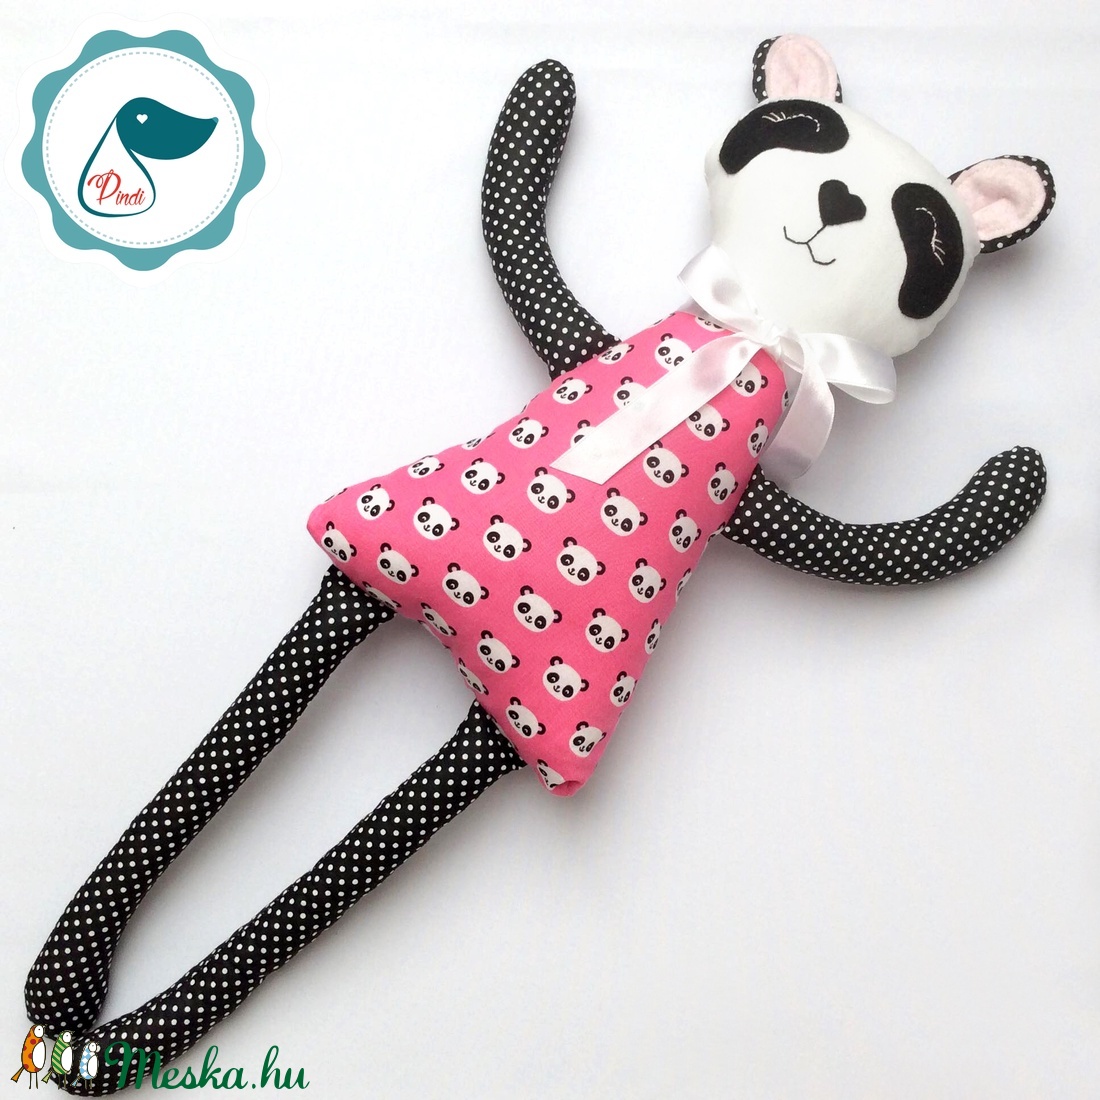 Panda lány - Egyedi tervezésű kézműves textil játék - pandamaci játék - panda textilfigura - játék & sport - plüssállat & játékfigura - cica - Meska.hu